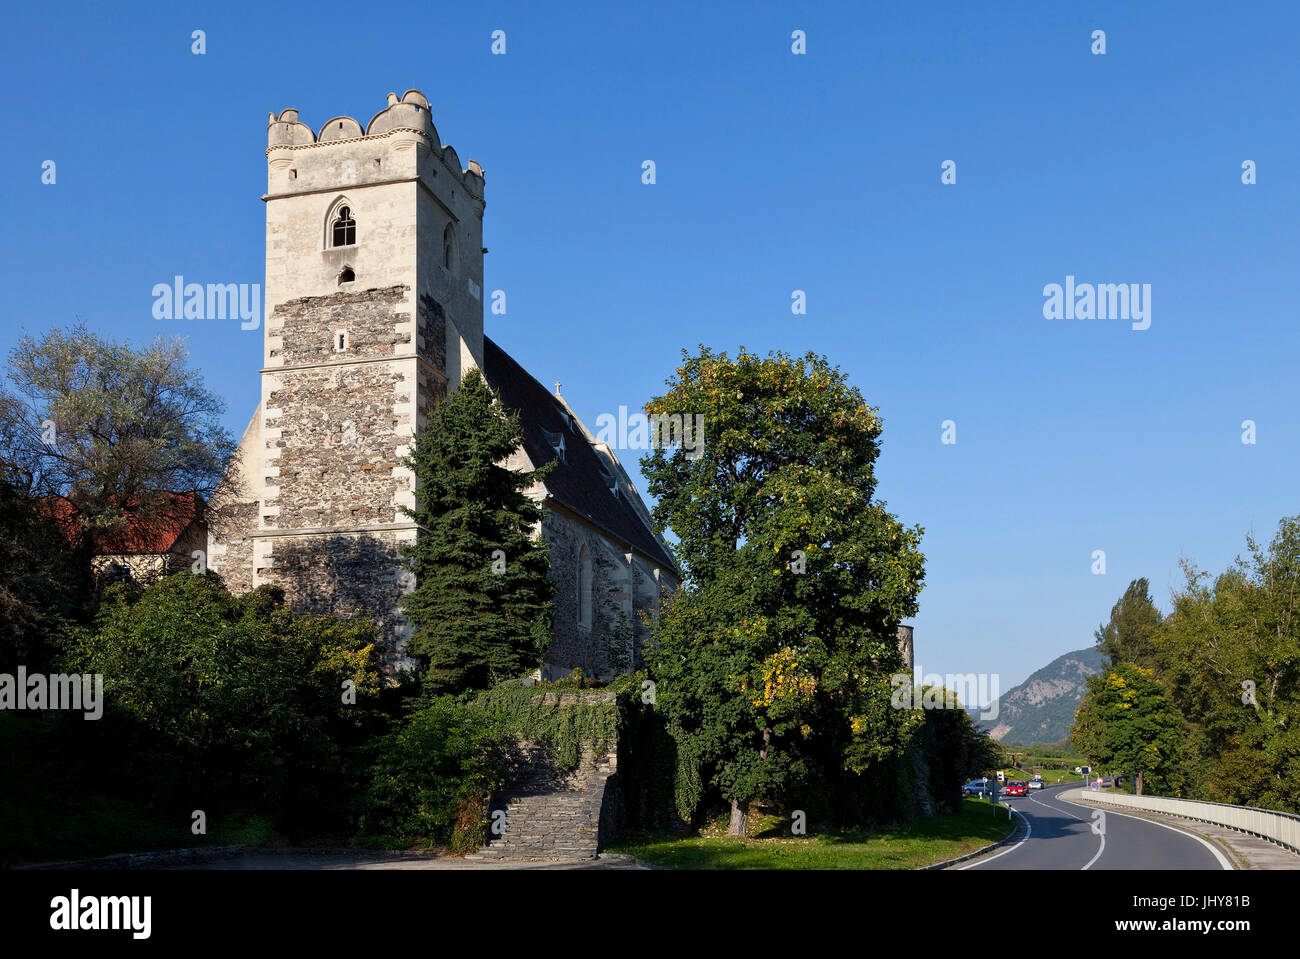 Church in Saint Michael / the Danube, Wachau, Lower Austria, Austria - Church in Saint Michael / the Danube, Austria, Lower Austria, Wachau region, Ki Stock Photo